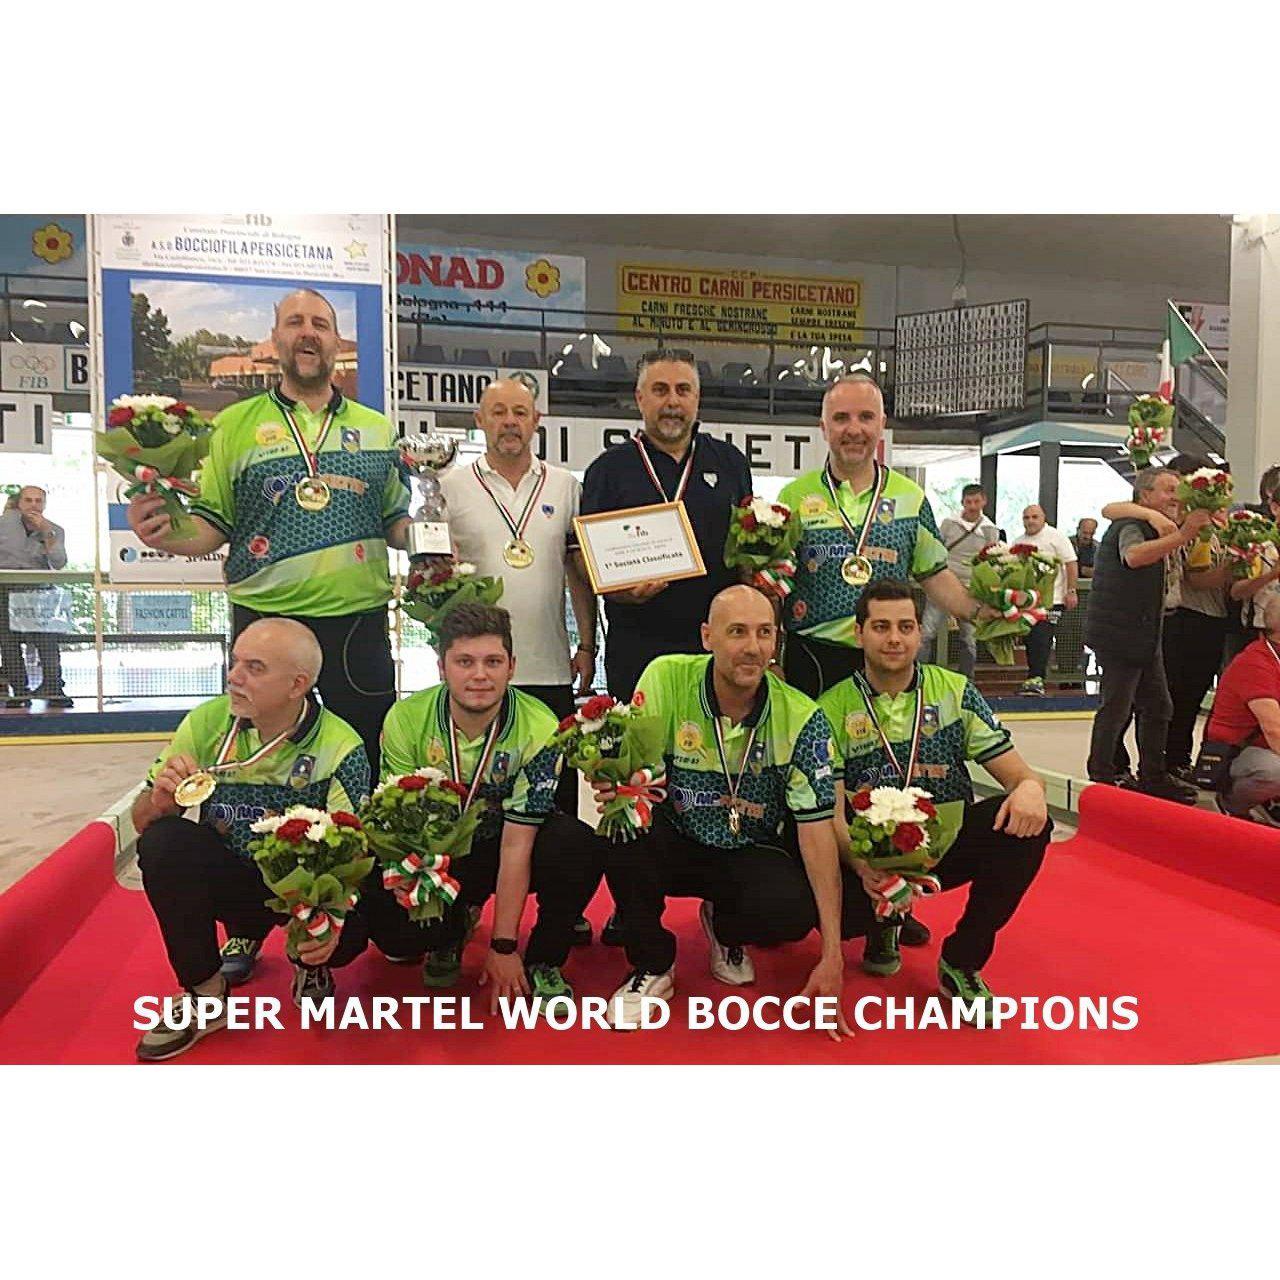 Super Martel World Bocce Champions